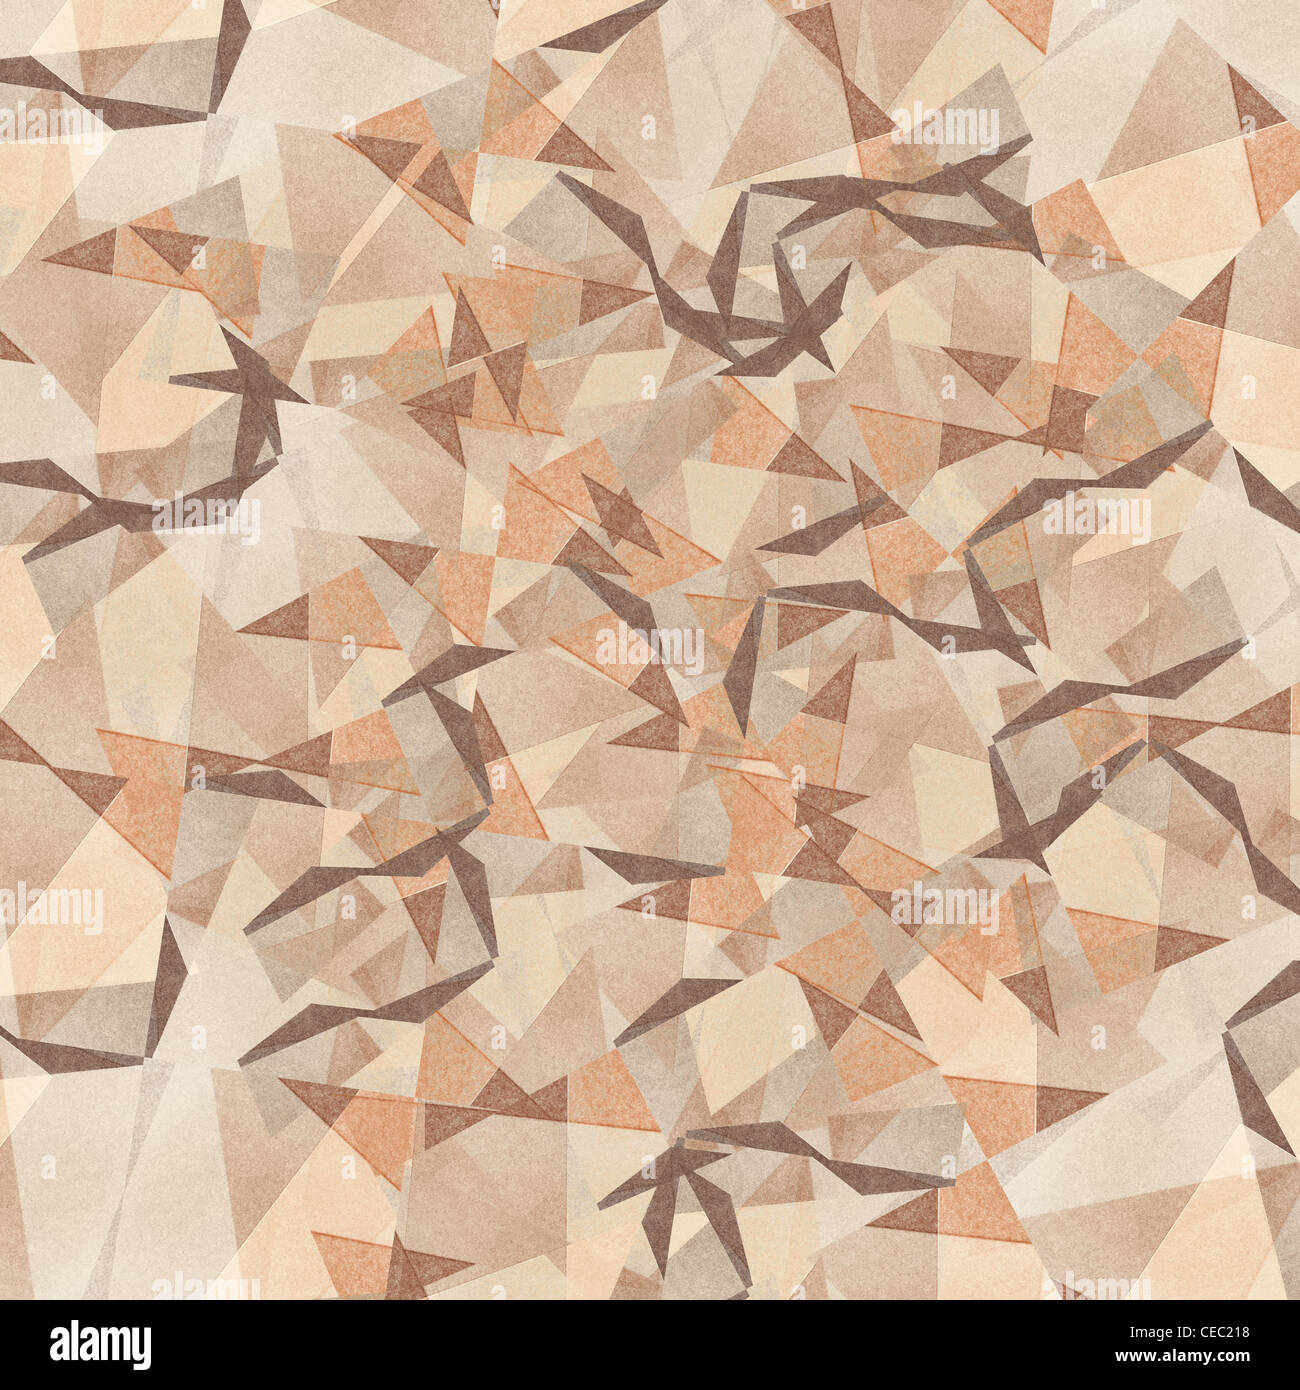 Grungy et granuleux, arrière-plan couleur abstrait blanchie faites de figures géométriques entrecroisés, vintage paper texture Banque D'Images